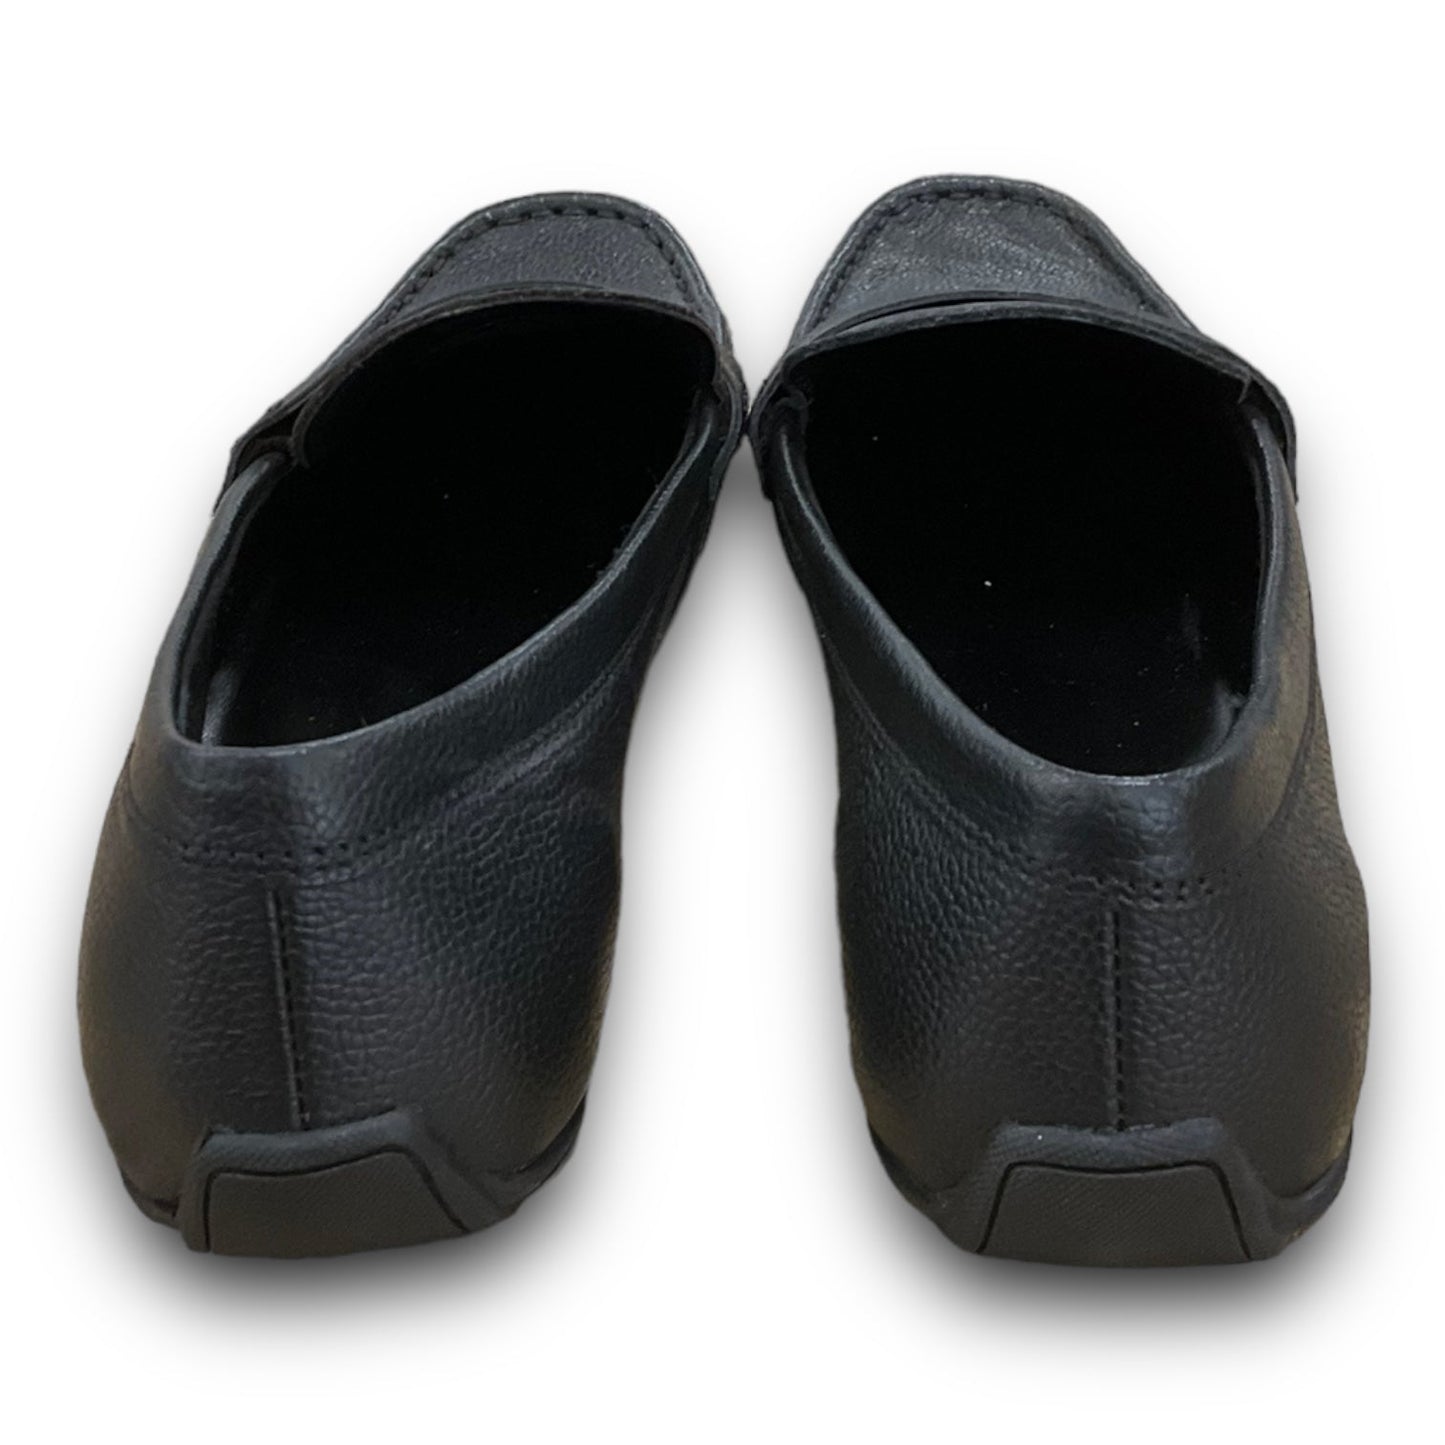 Black Shoes Flats Joie, Size 8.5